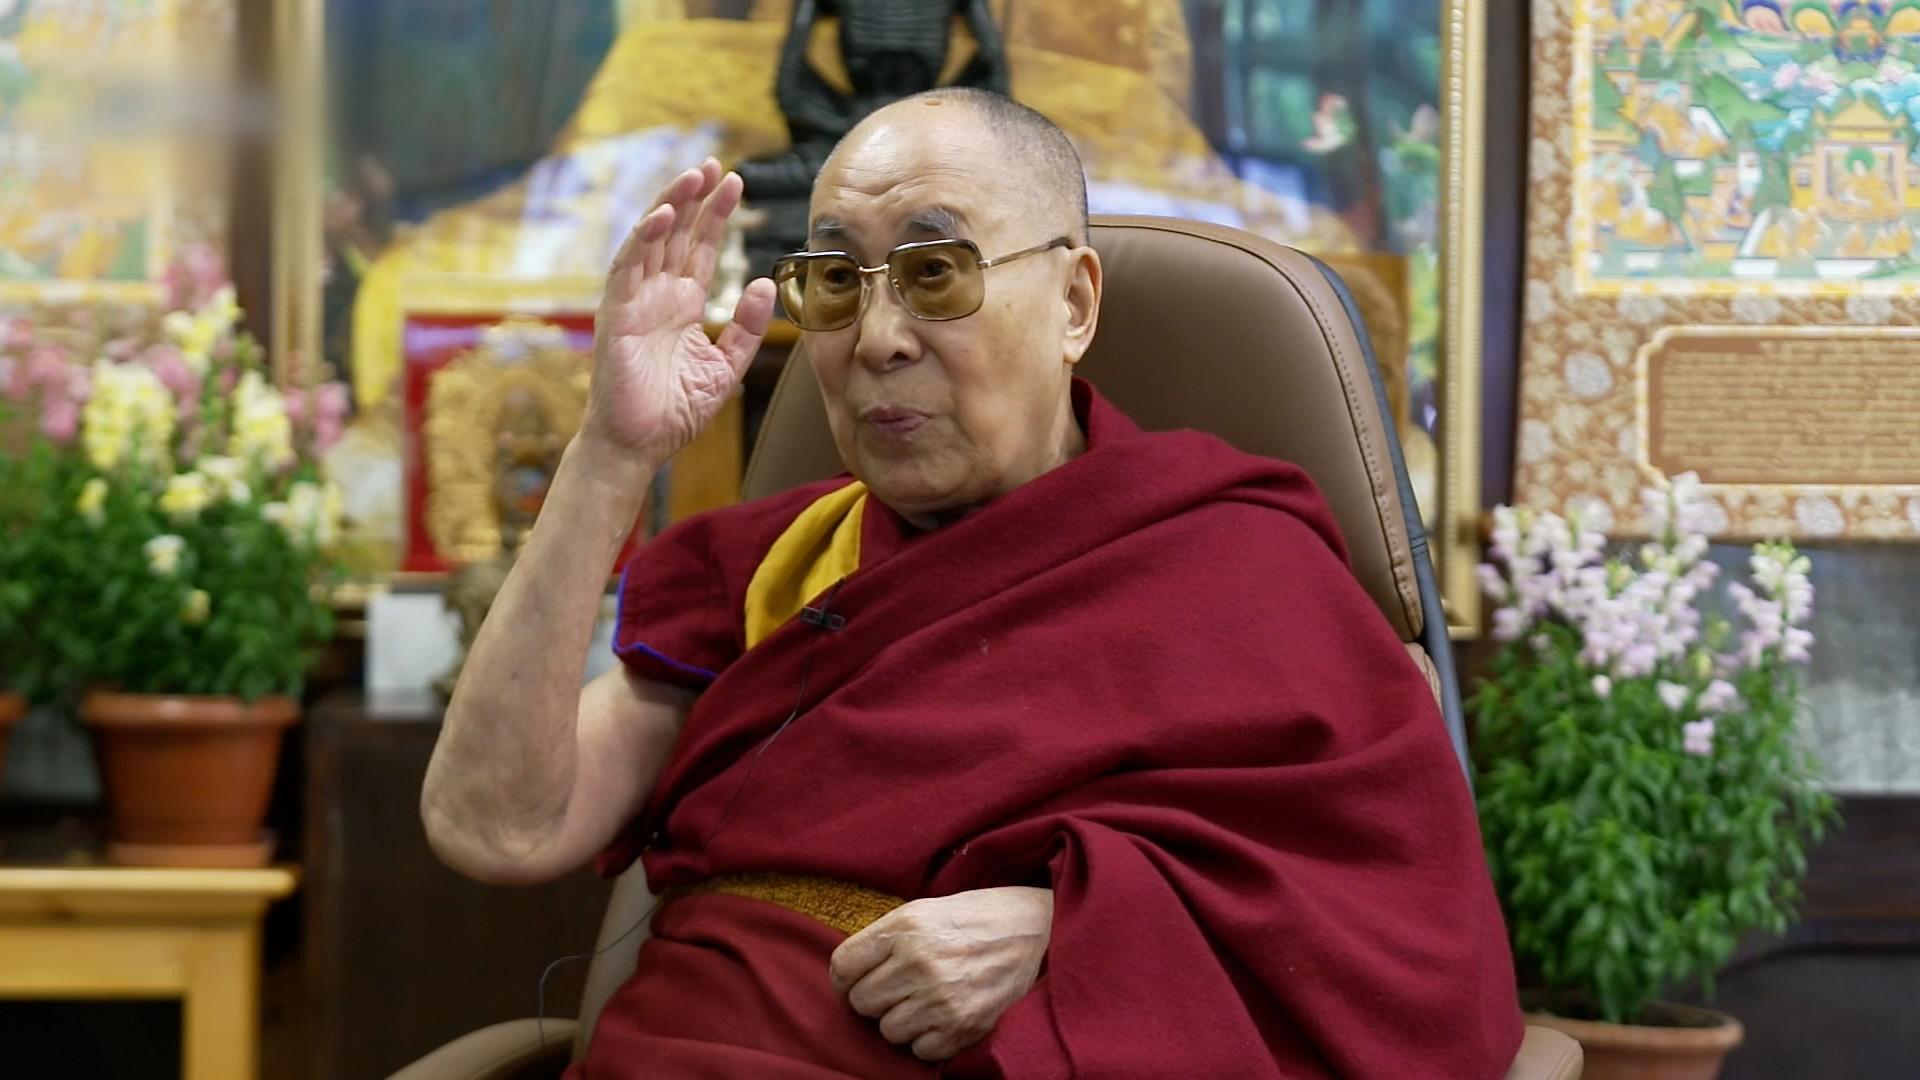 Closeup image of the Dalai Lama